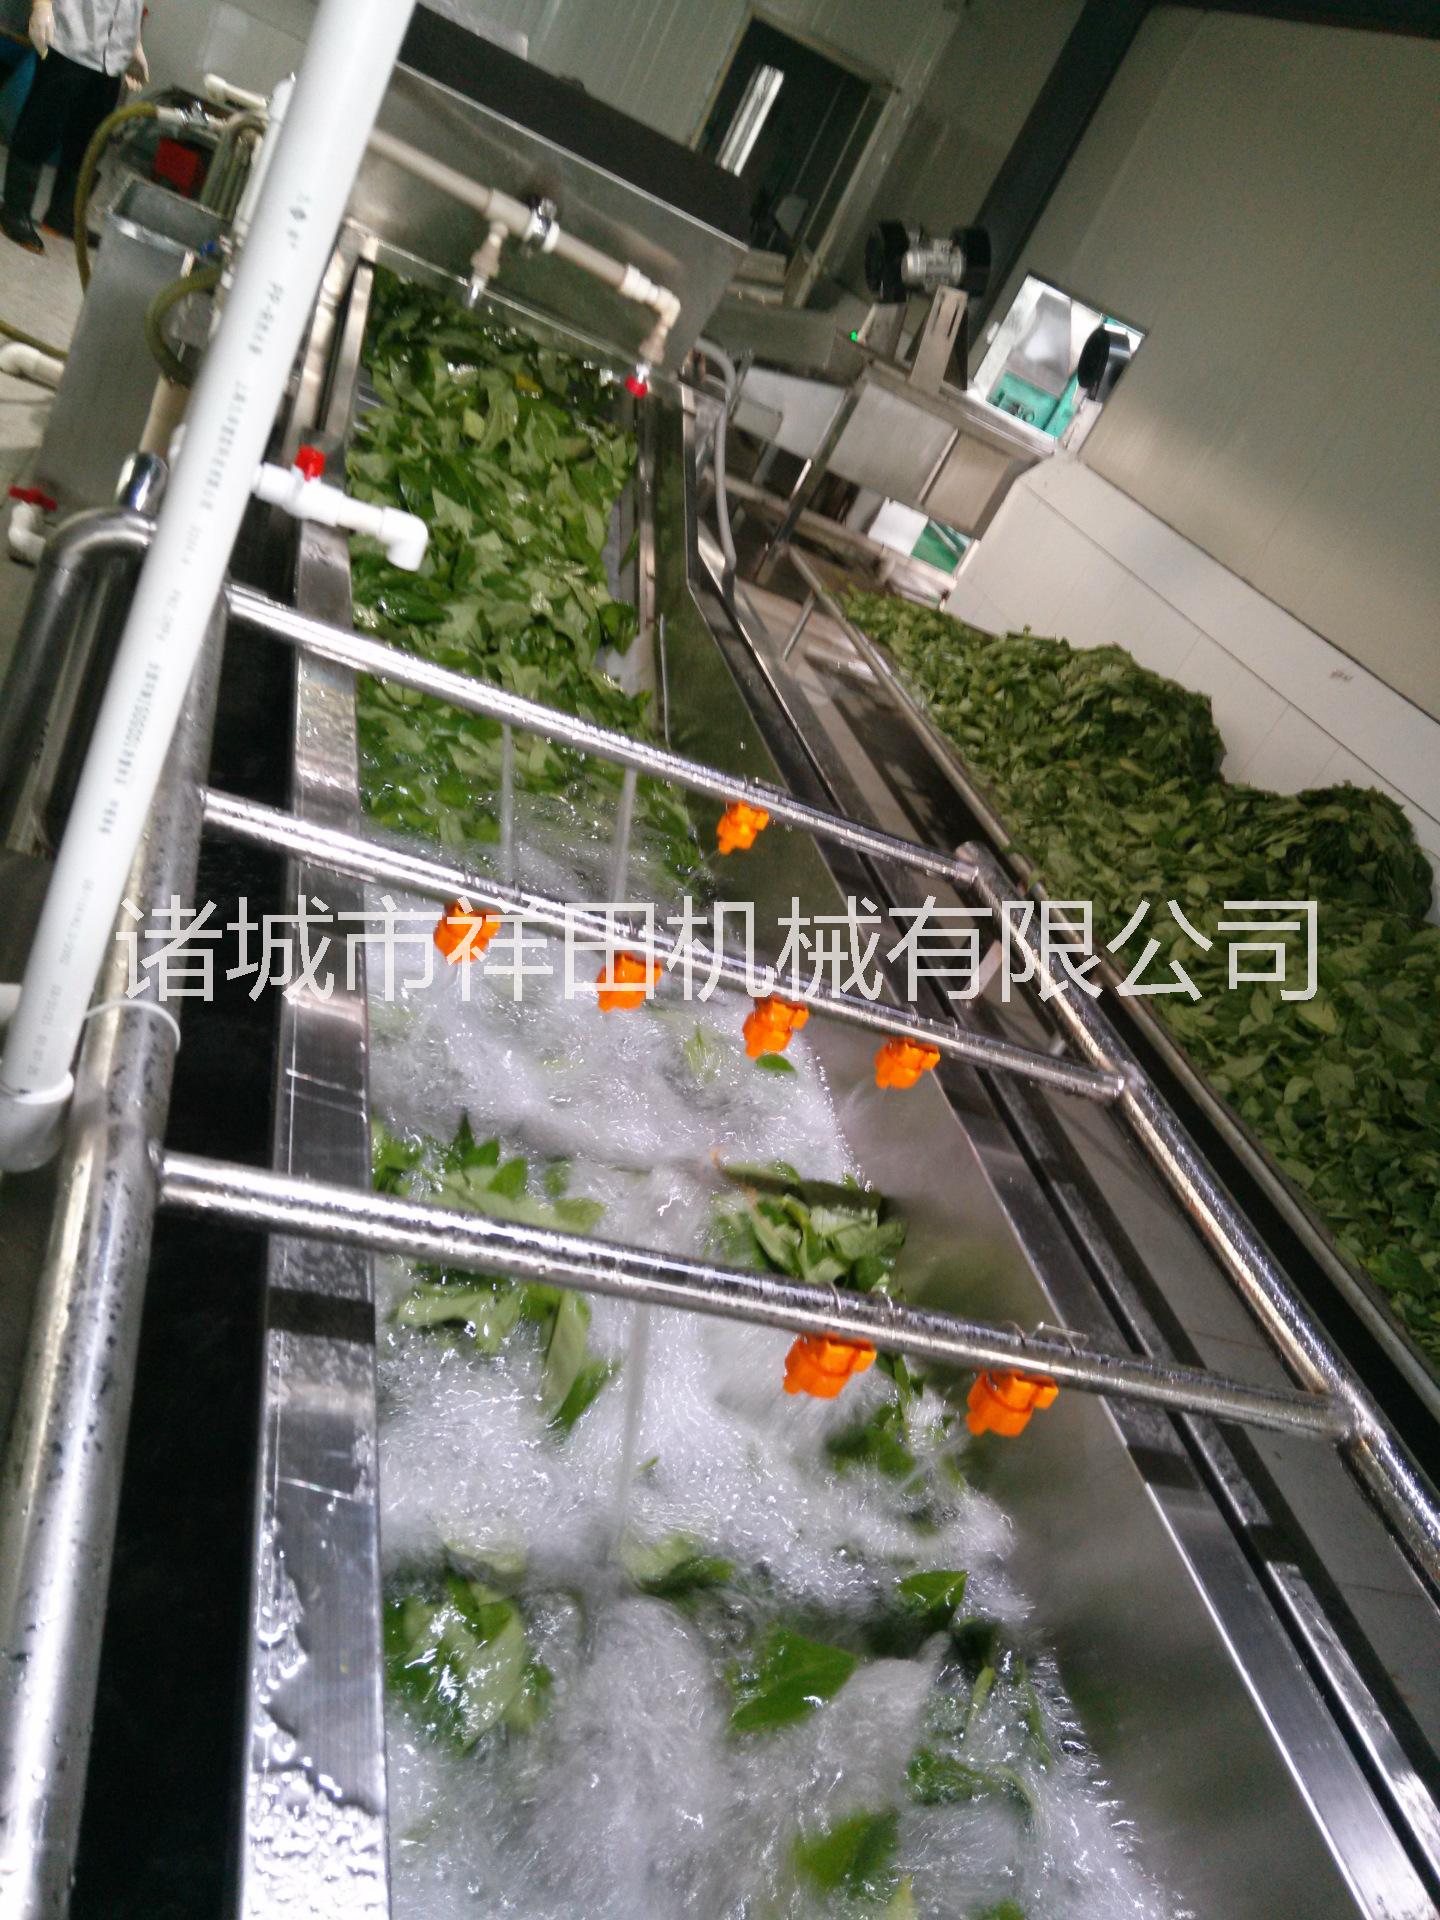 气泡式蔬菜清洗机 根茎类蔬菜清洗机 中草药清洗设备 不锈钢蔬菜清洗机